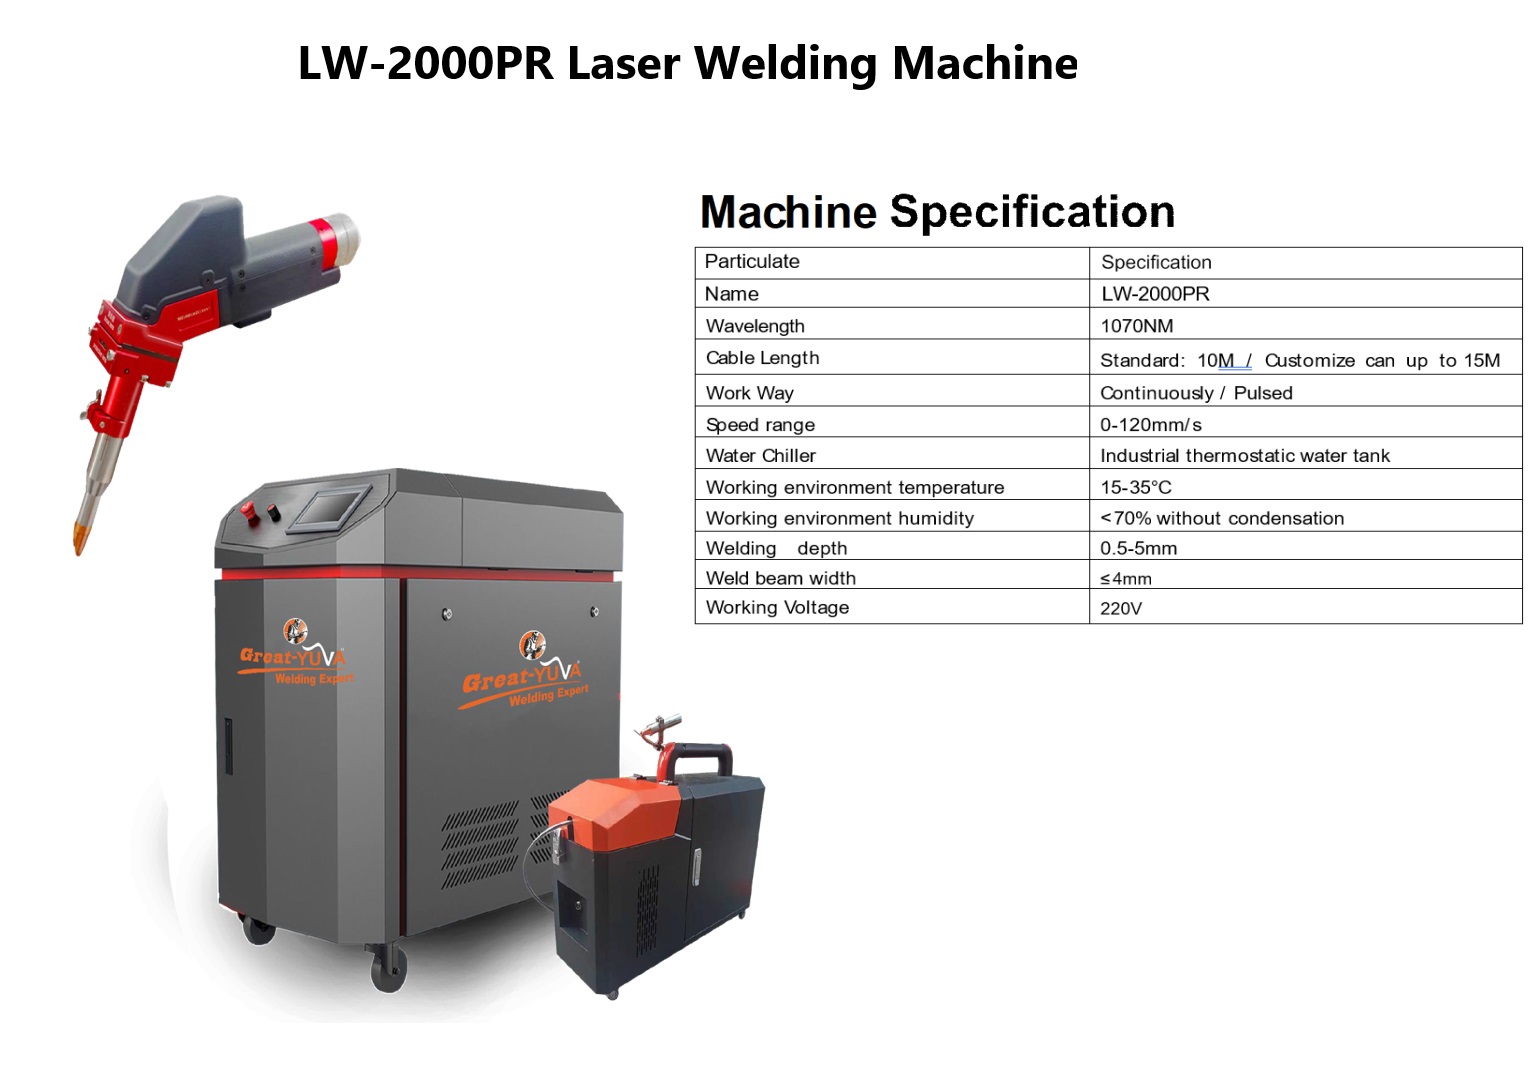 Laser welding machine LW-2000PR